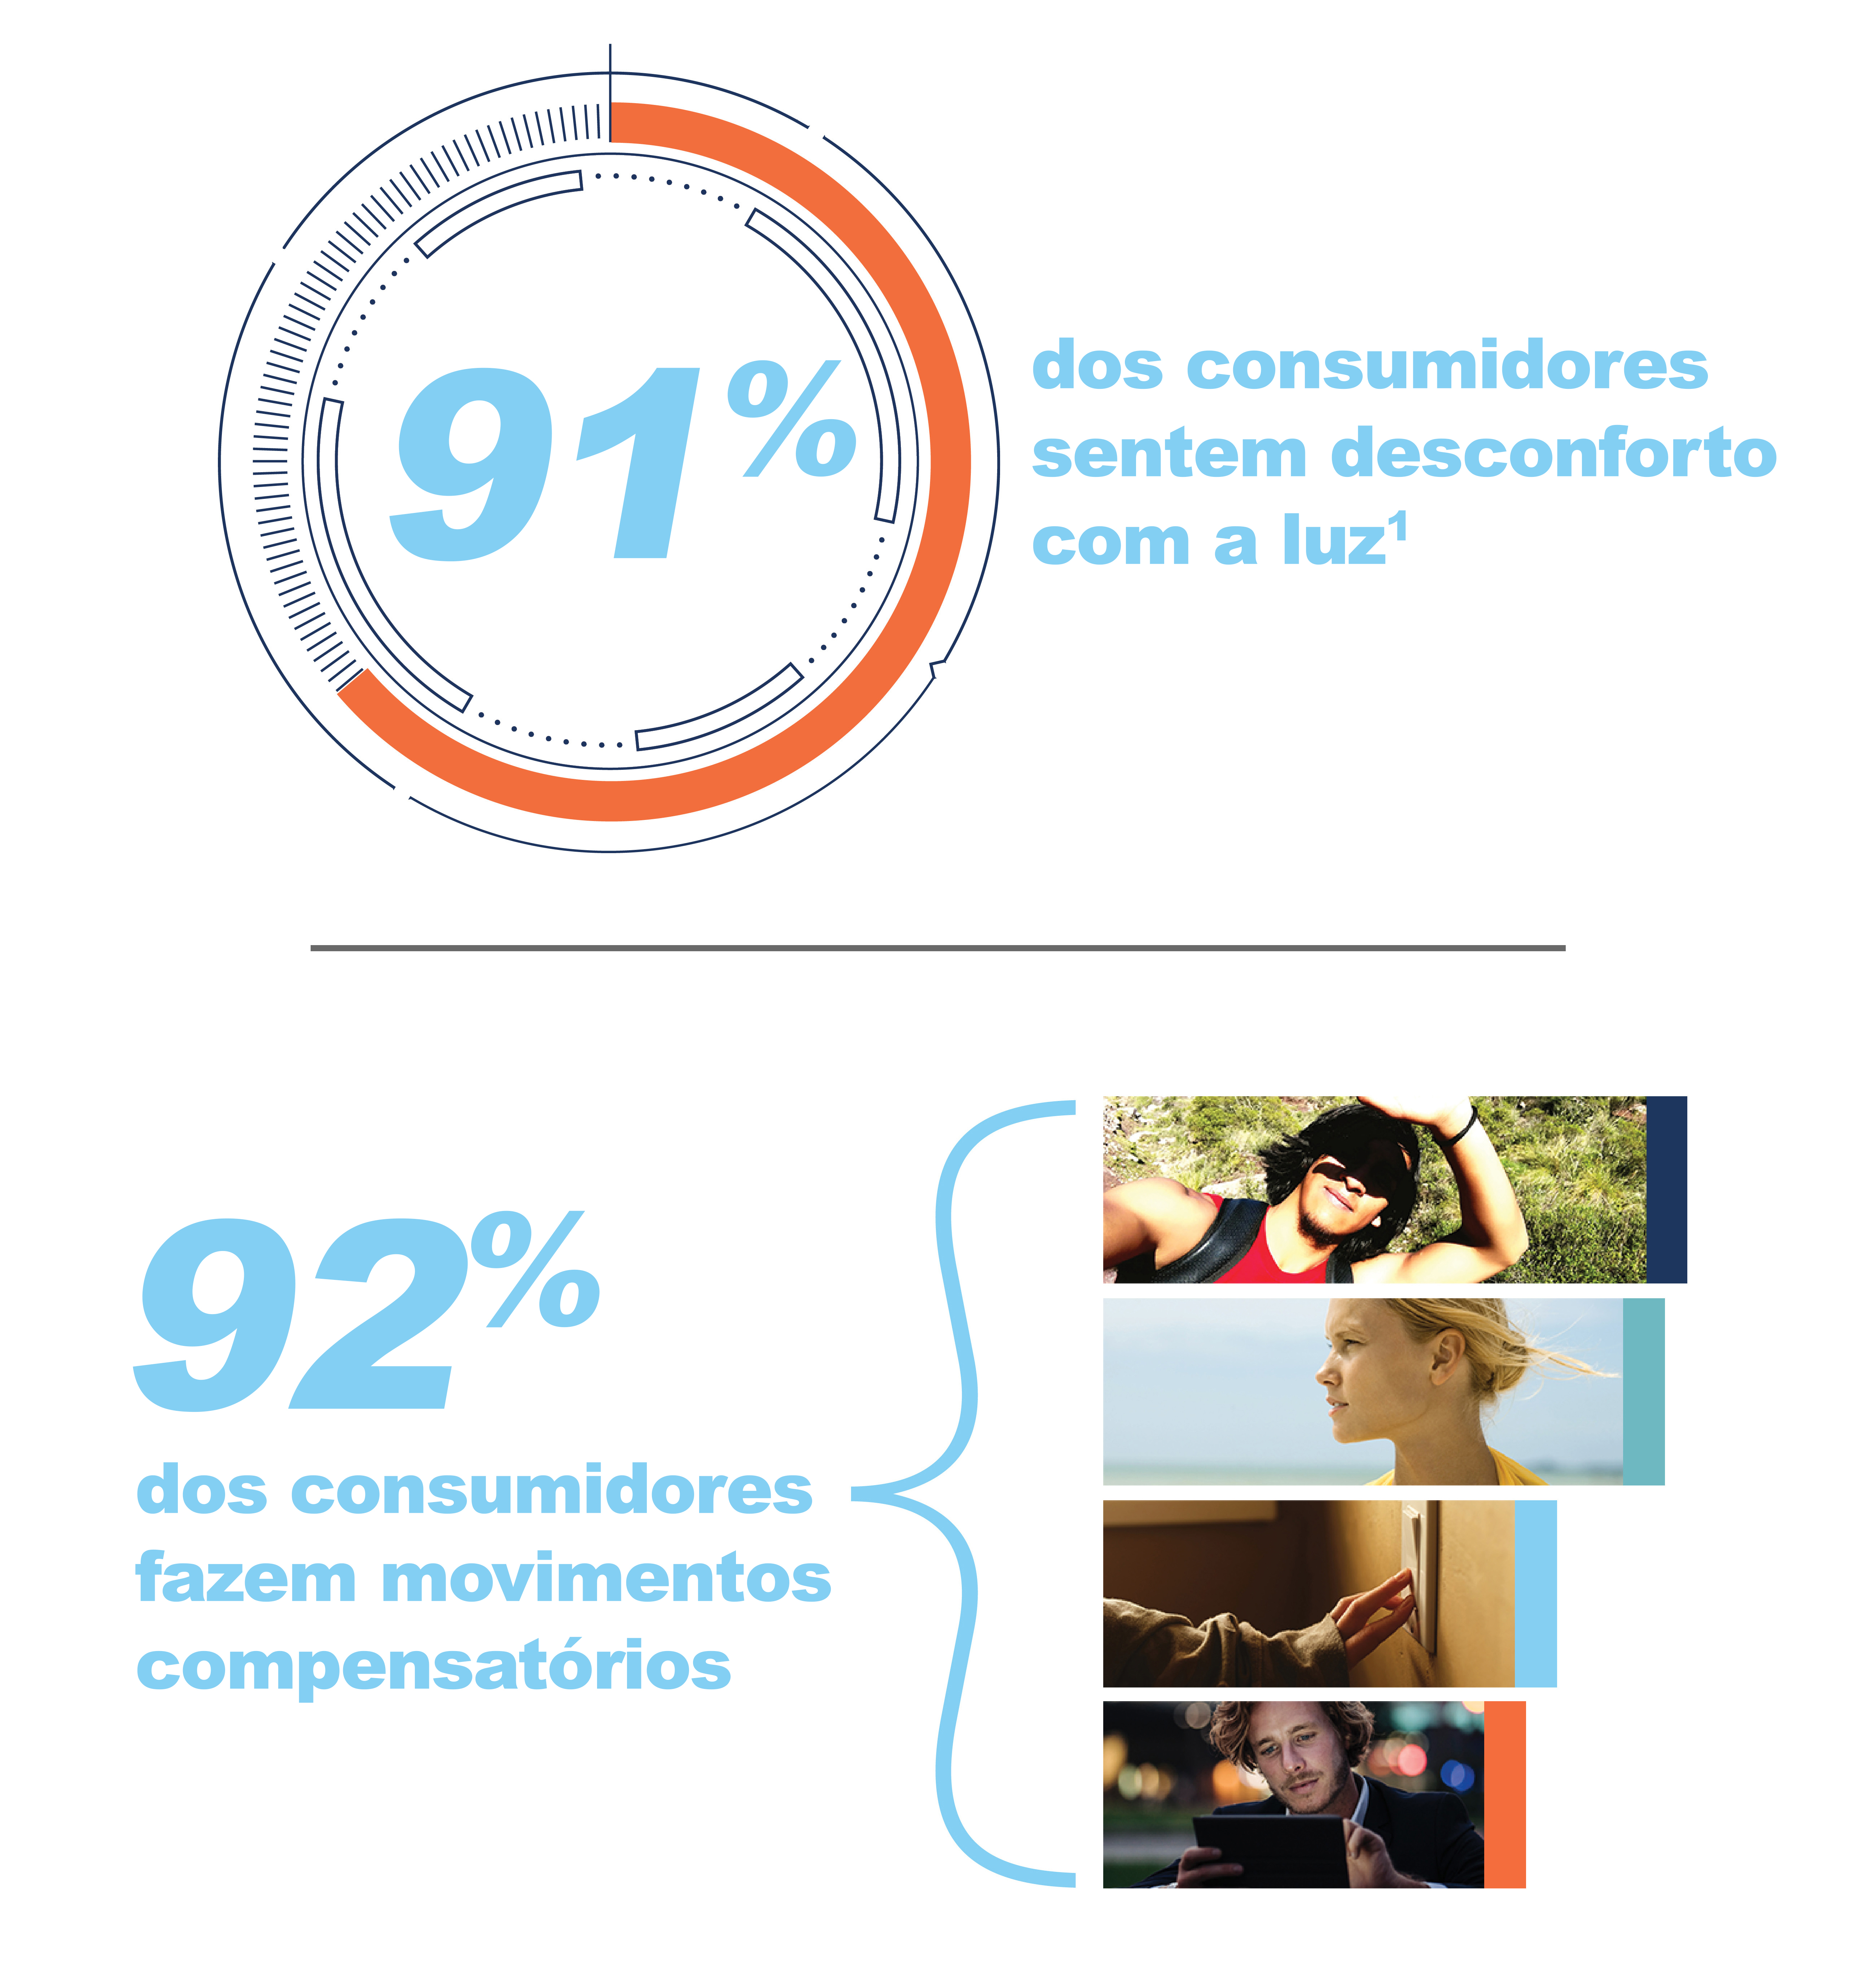 Infográfico mostrando a porcentagem de consumidores que se incomodam com a luz intensa e aqueles que utilizam comportamentos compensatórios para lidar com o problema